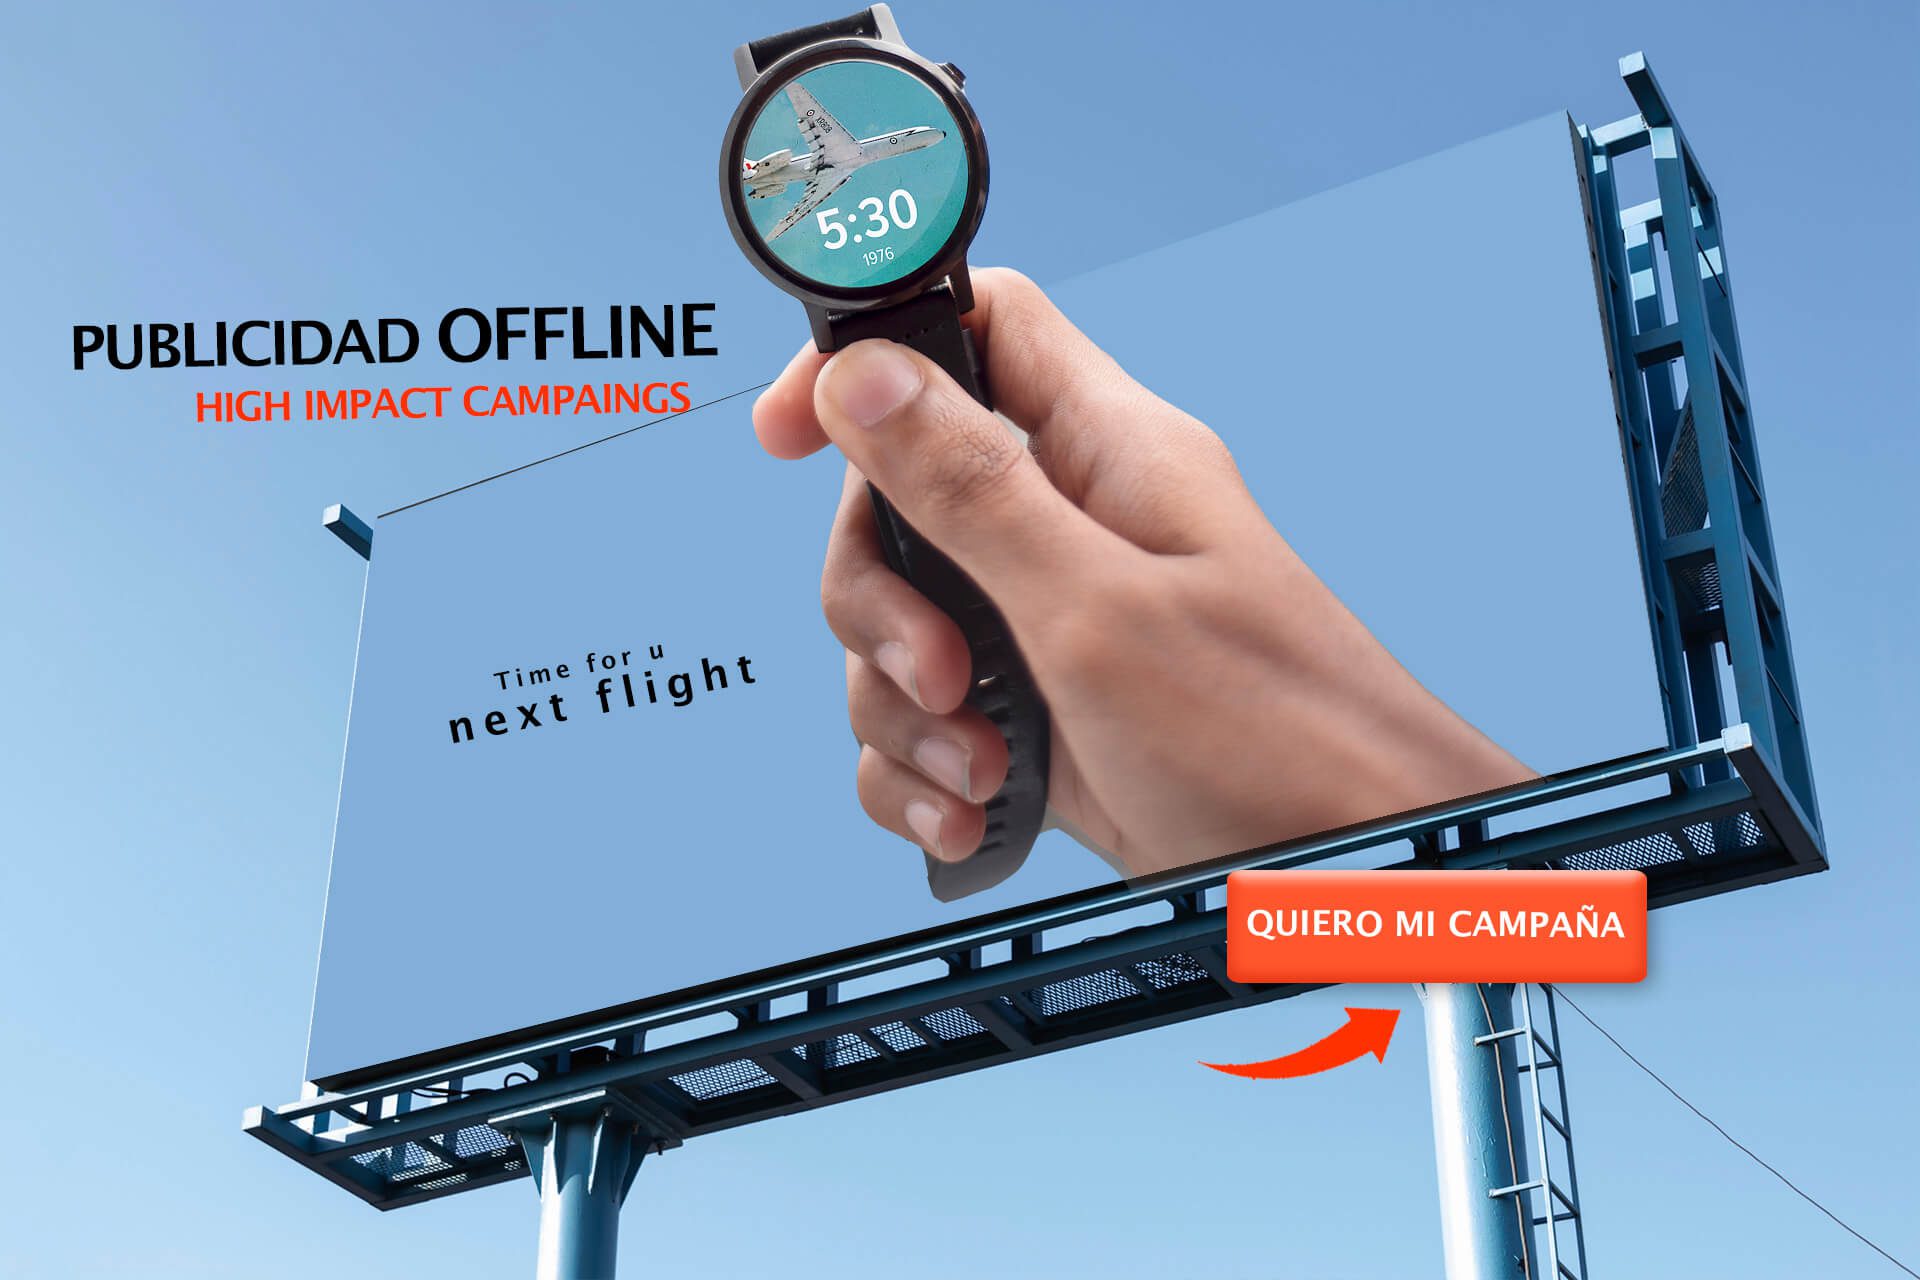 Publicidad offline, campañas de gran impacto. Zenko proyecto marketing y publicidad